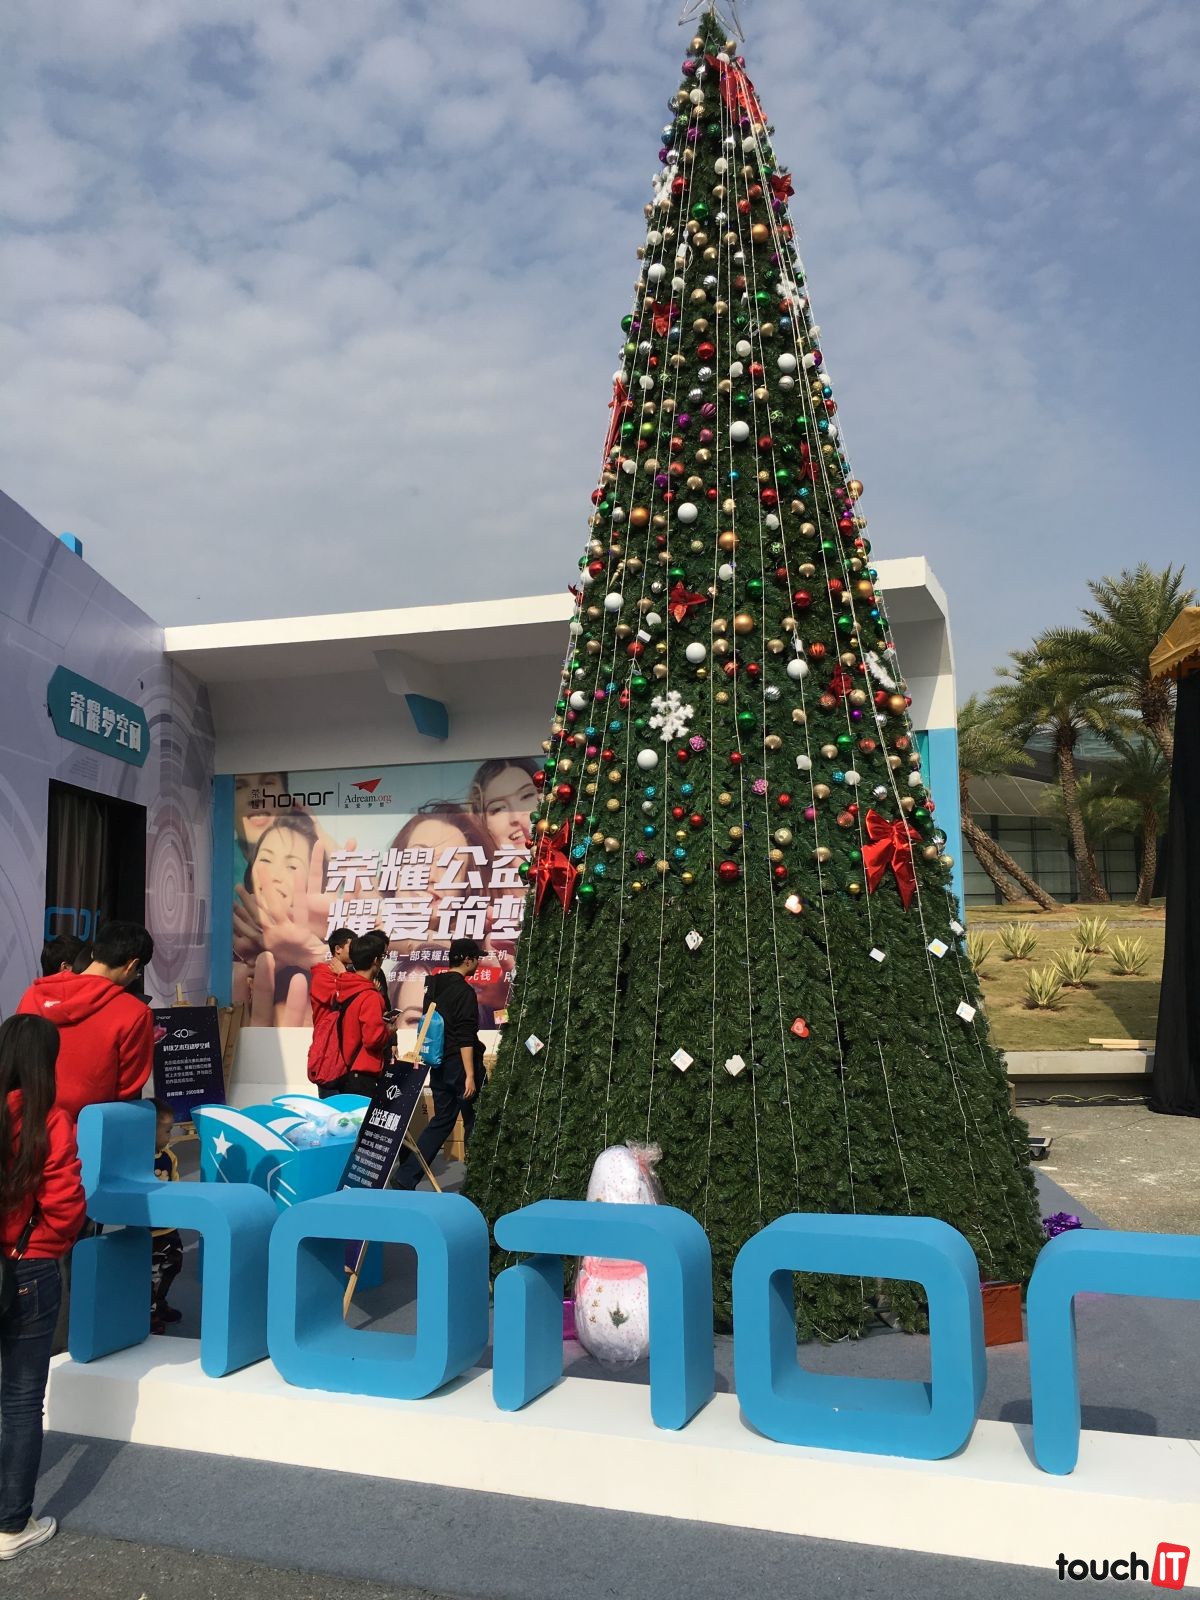 Vianočné stromčeky sú v decembri v Číne na každom kroku